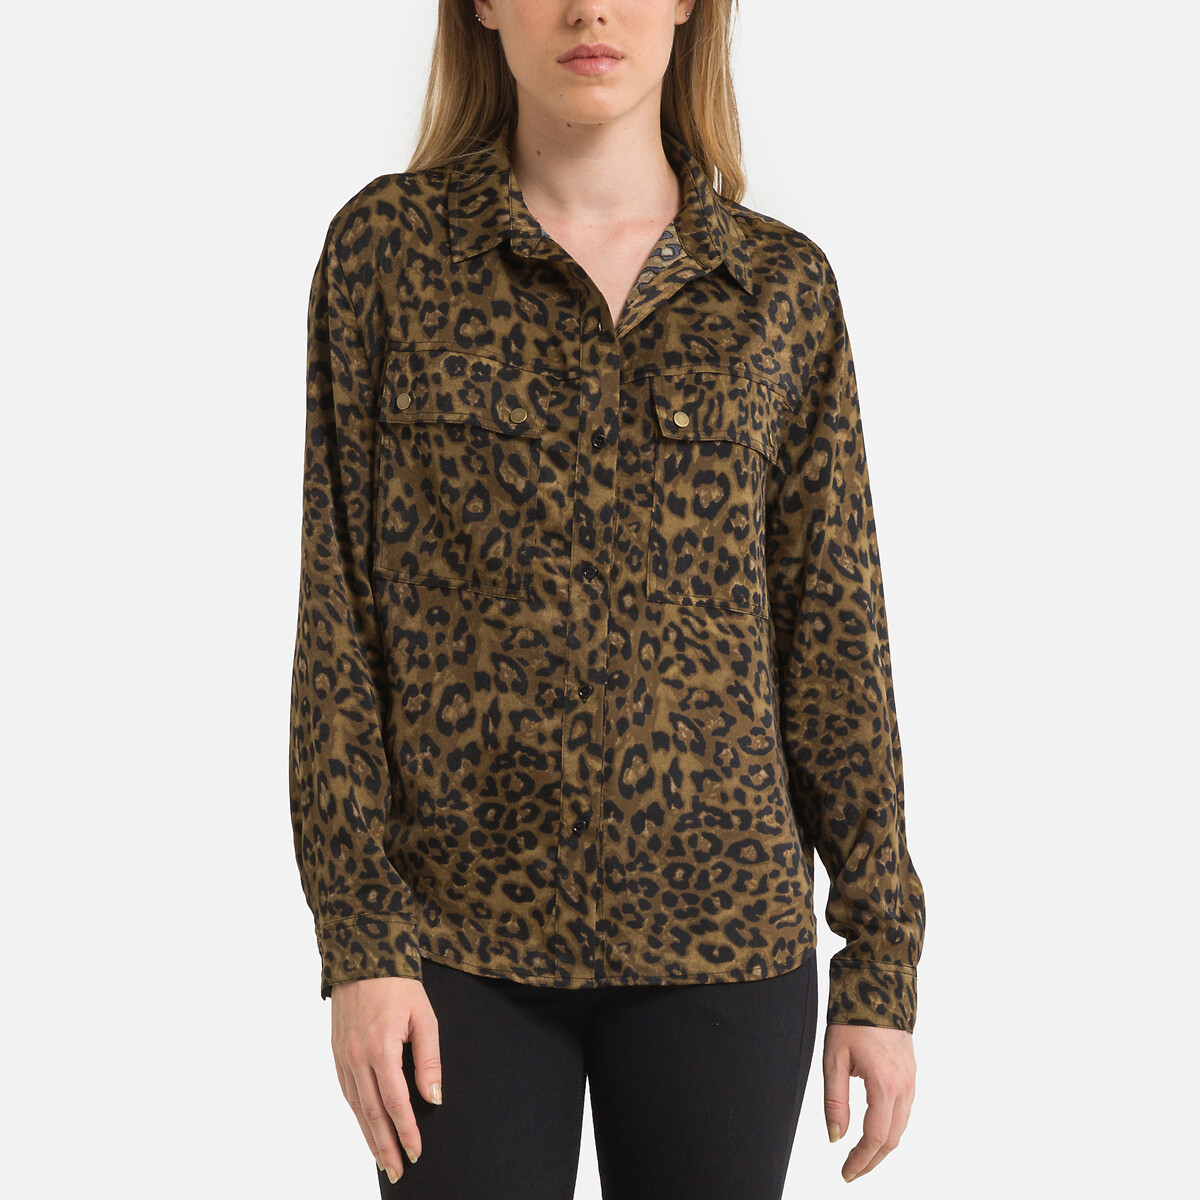 Блузка с анималистическим принтом и длинными рукавами XS другие блузка с леопардовым принтом xs другие